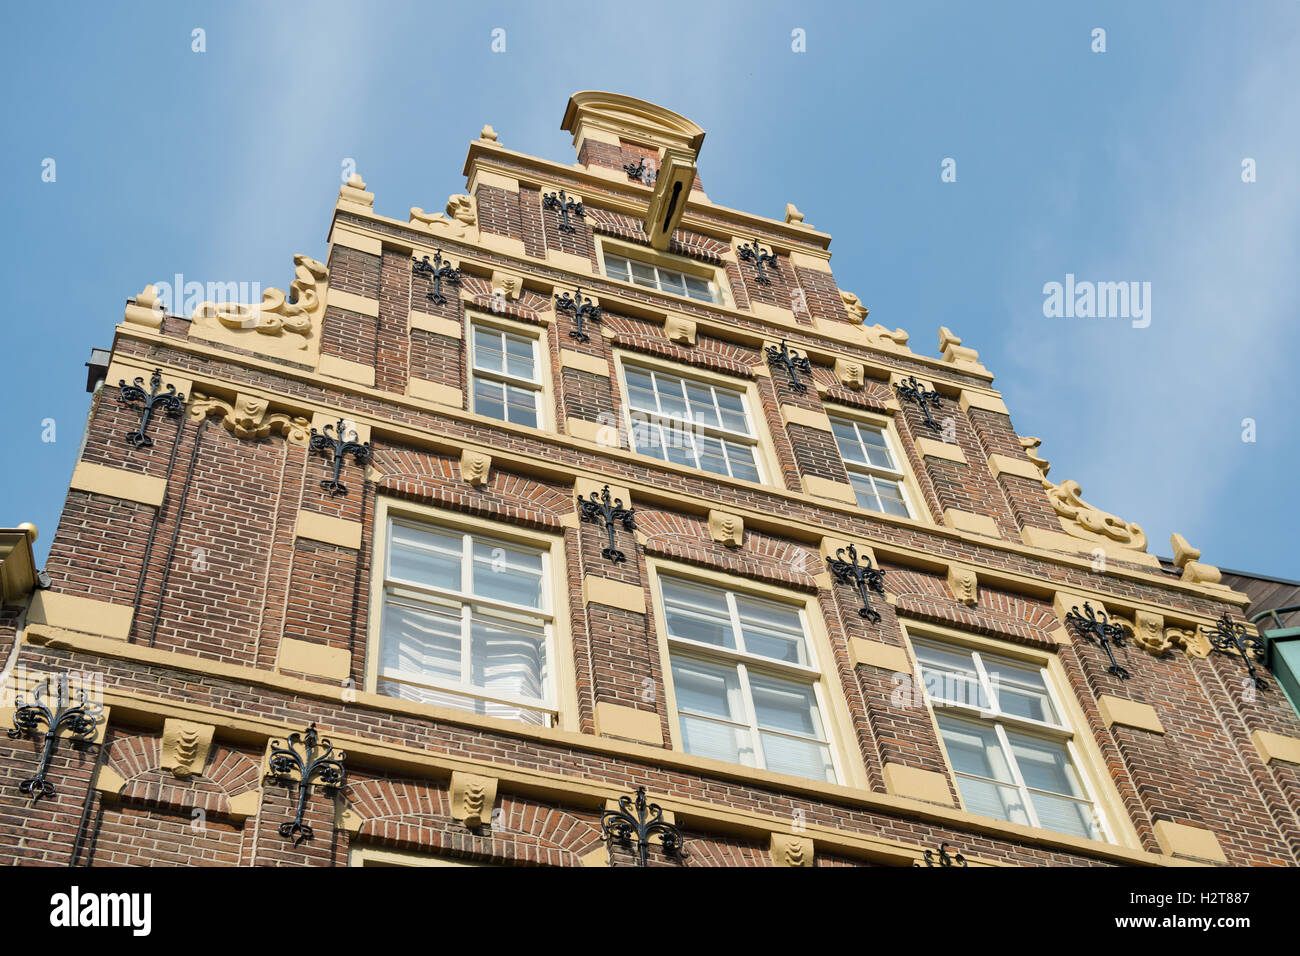 Typical Dutch facade building Stock Photo